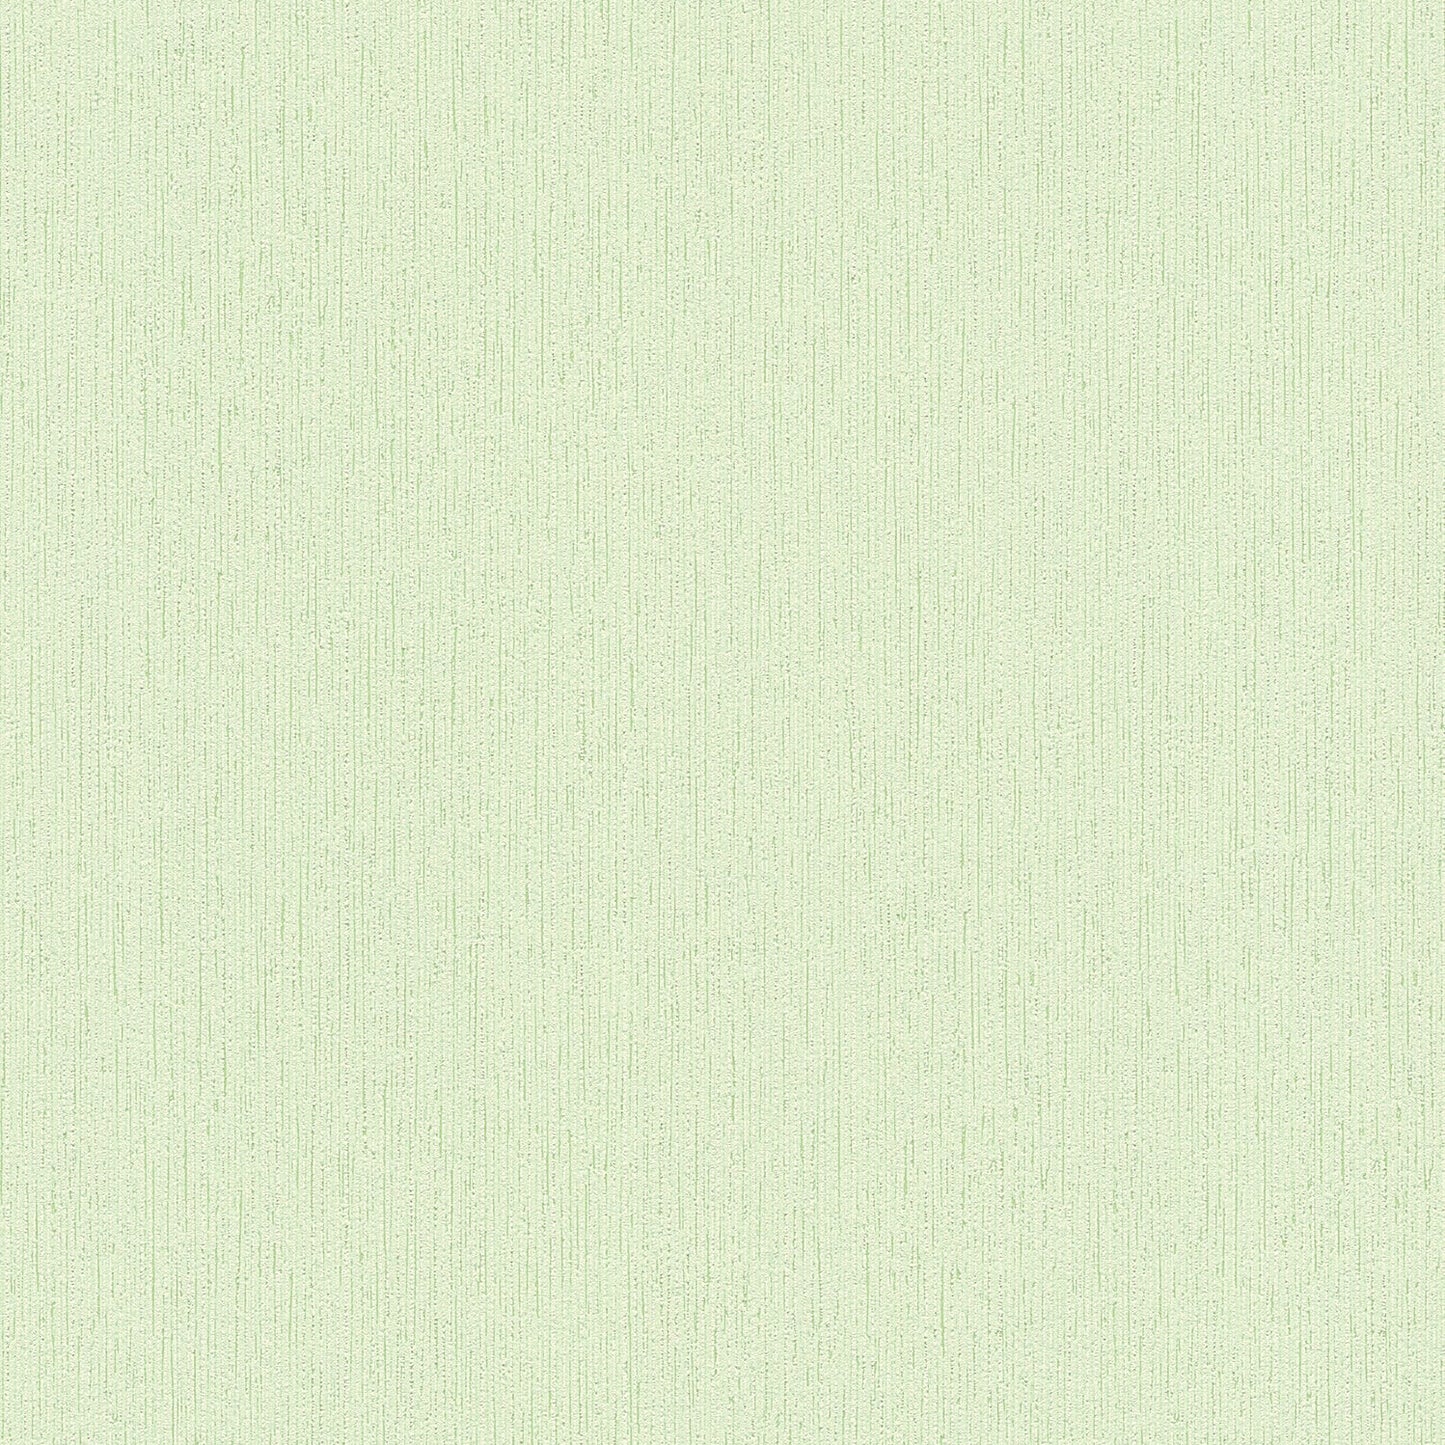 Acquire 2979-2885-09 Bali Murni Green Texture Green by Advantage Wallpaper